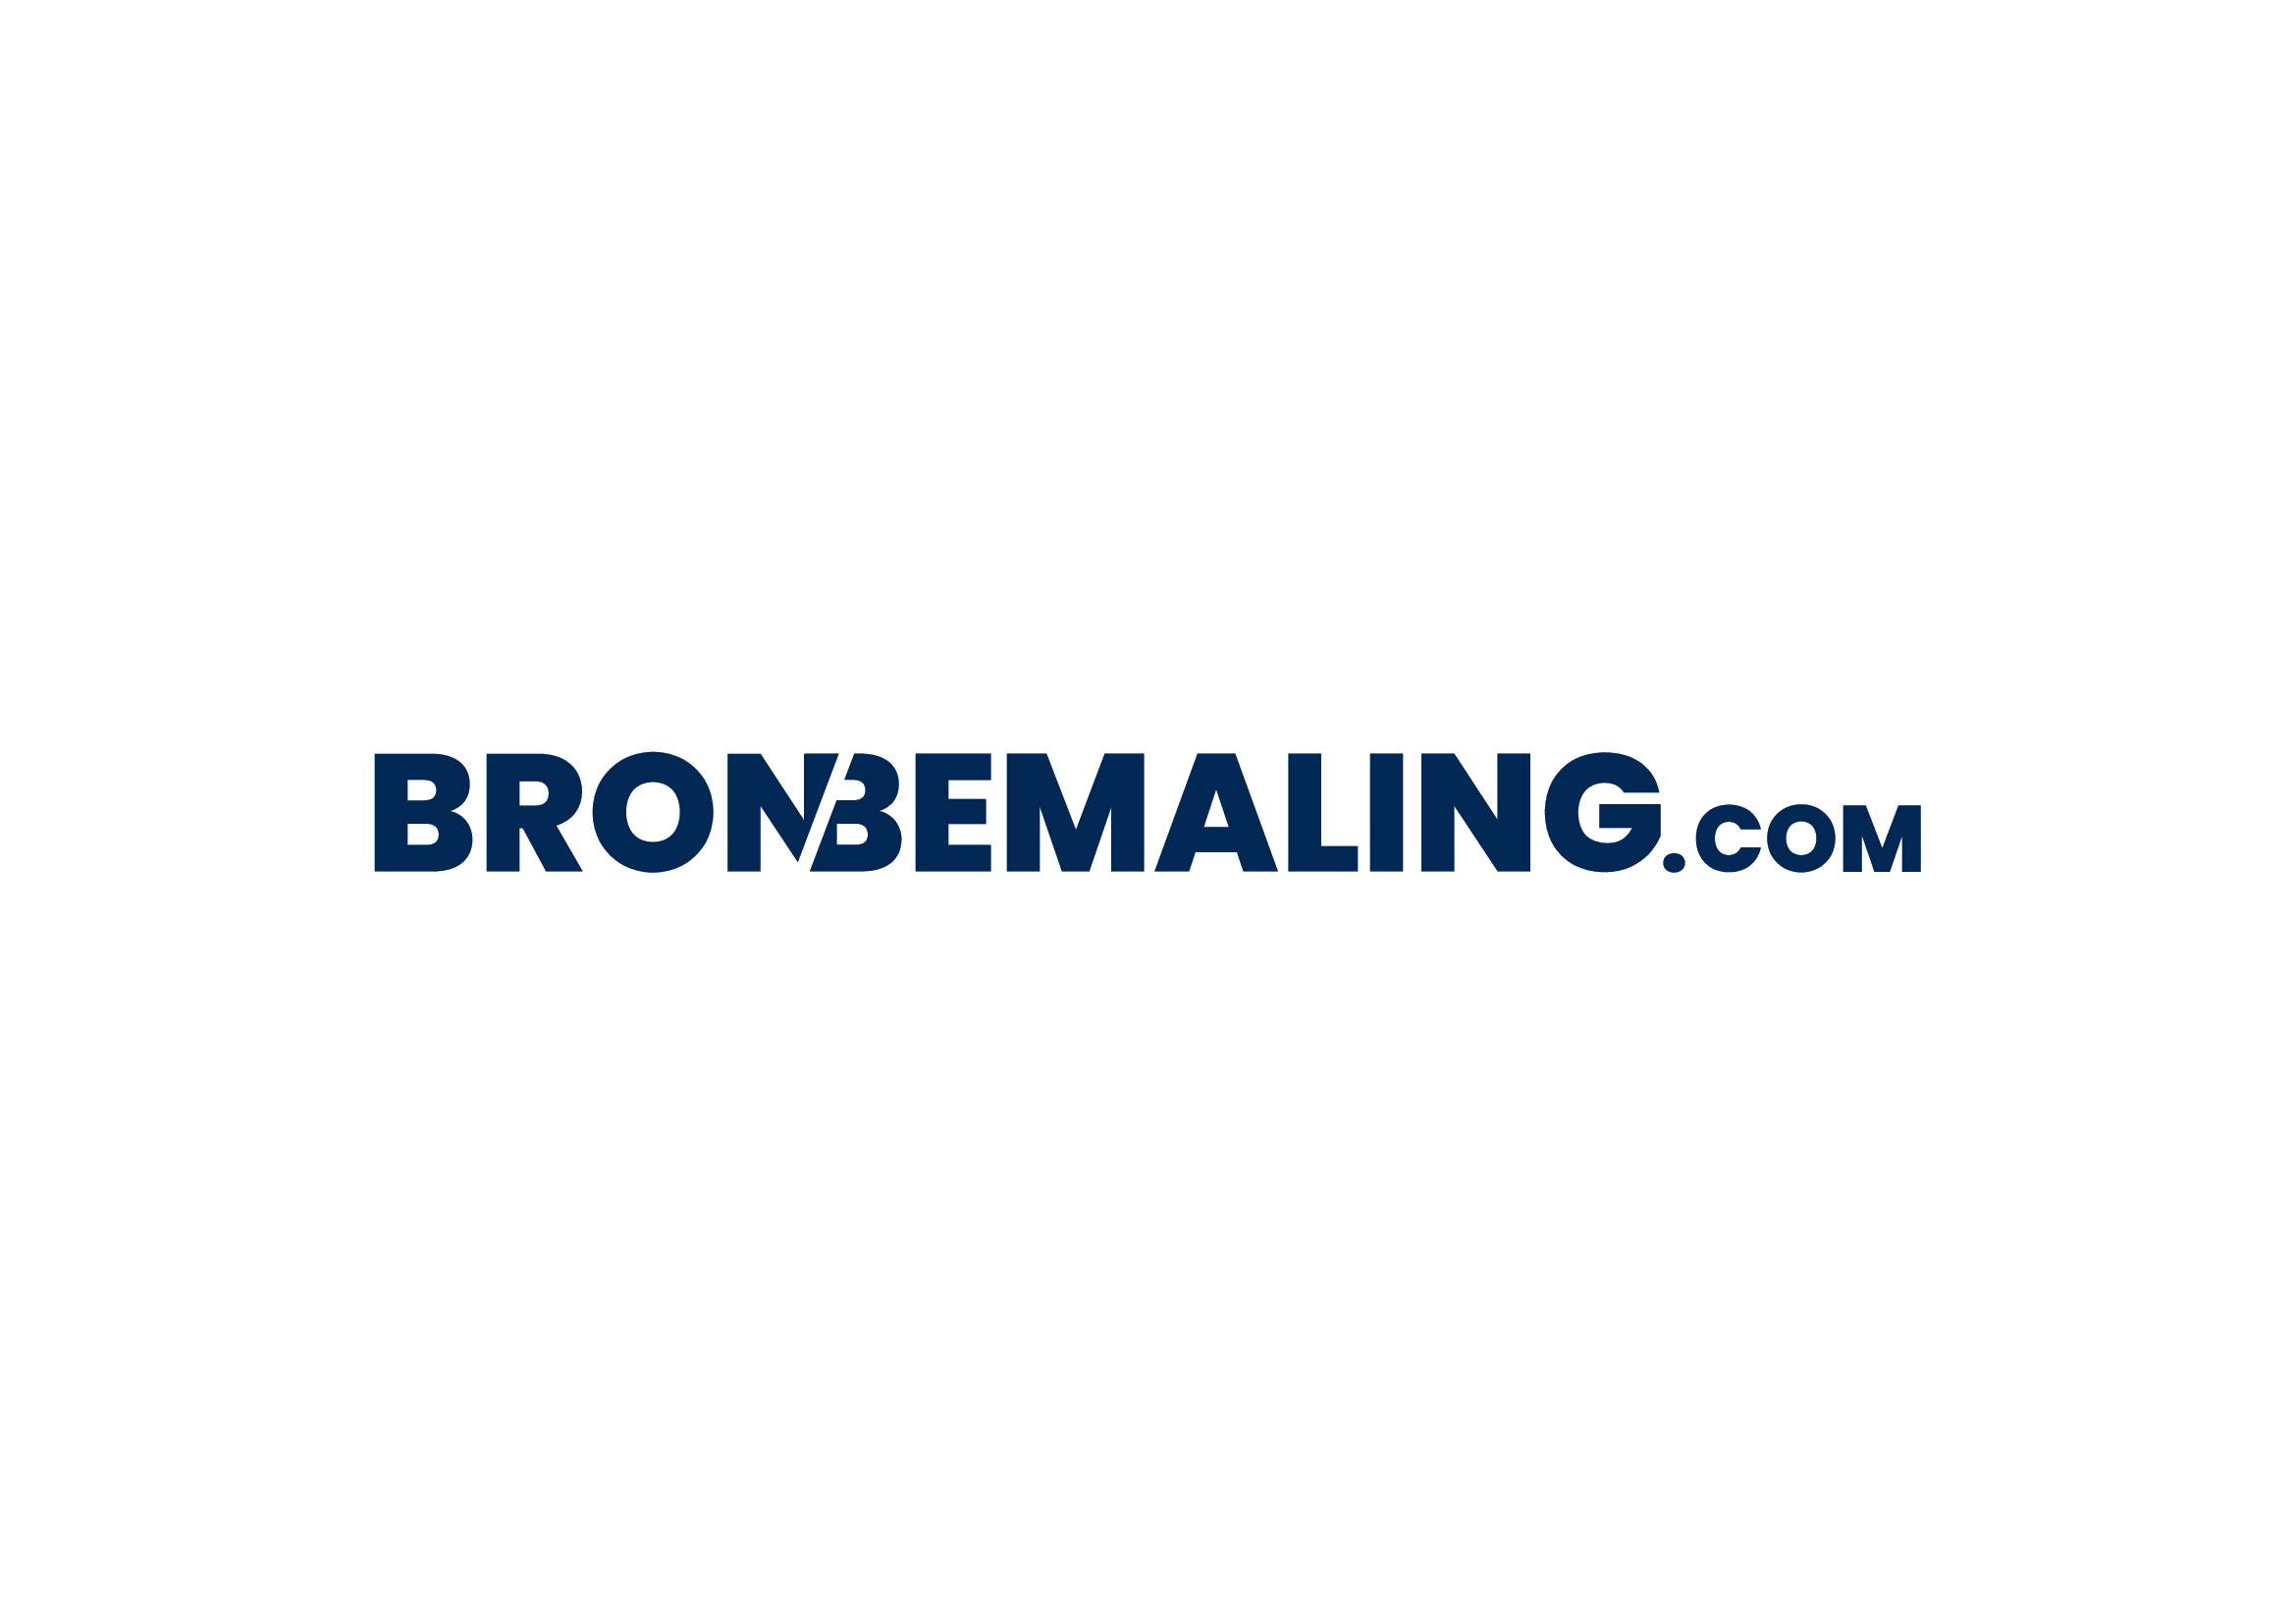 Logo Bronbemaling Com Vt V01